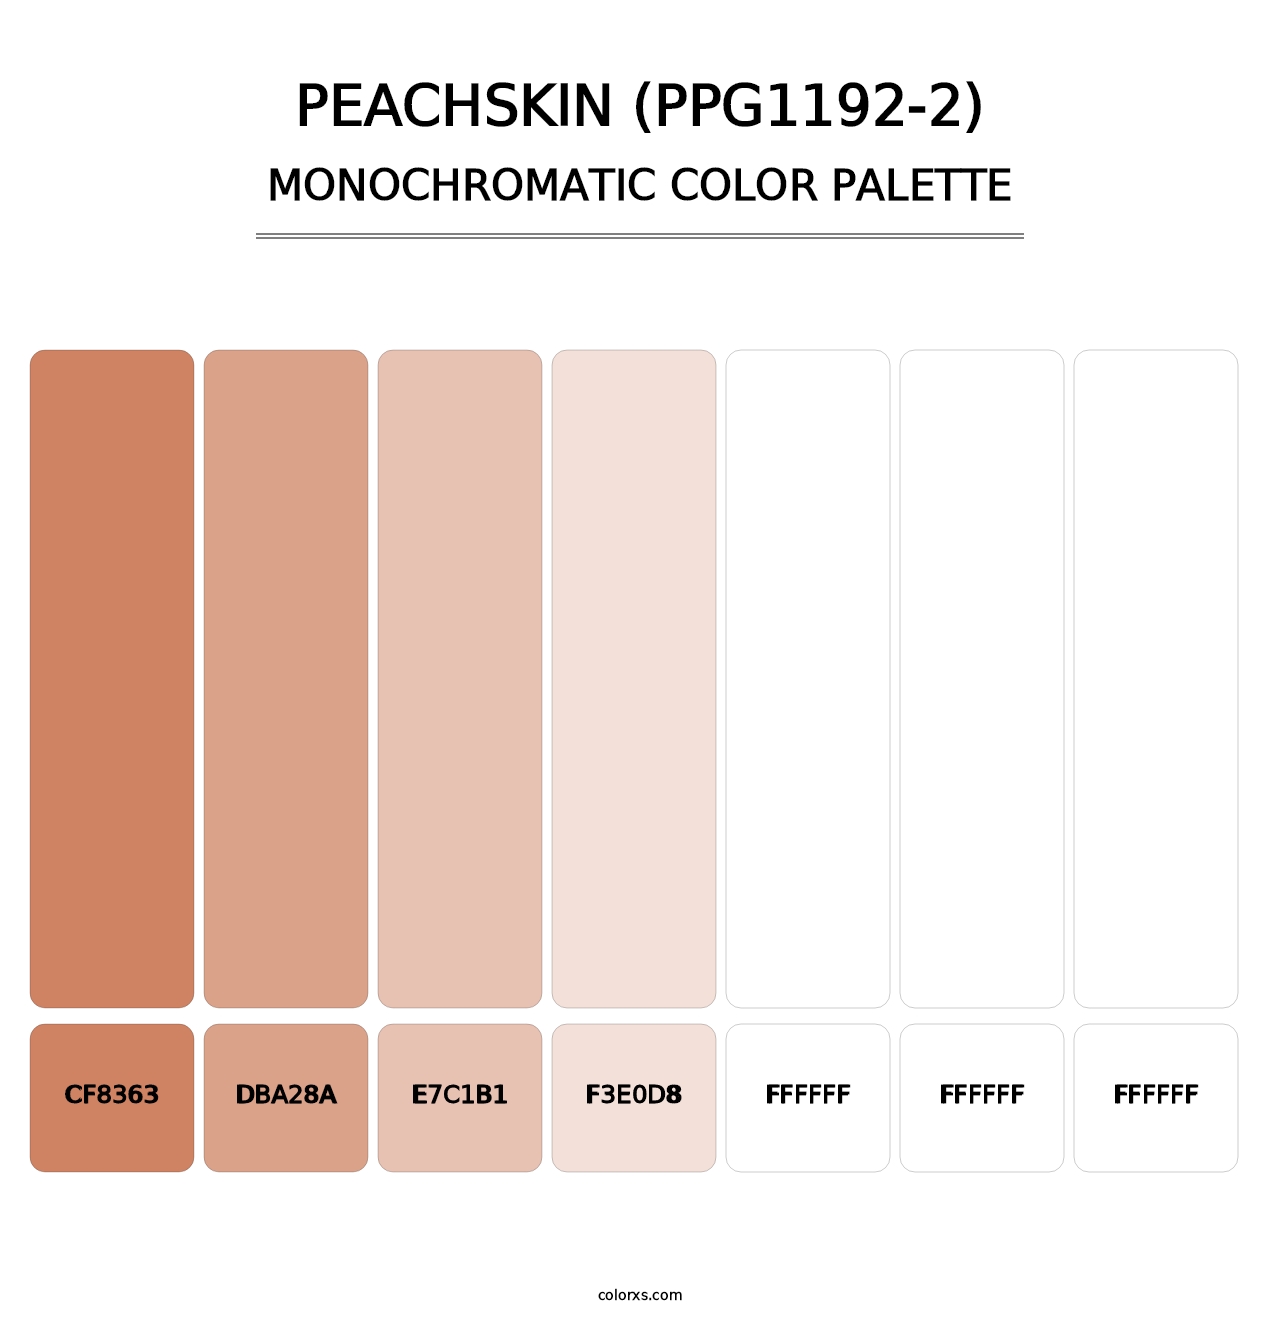 Peachskin (PPG1192-2) - Monochromatic Color Palette